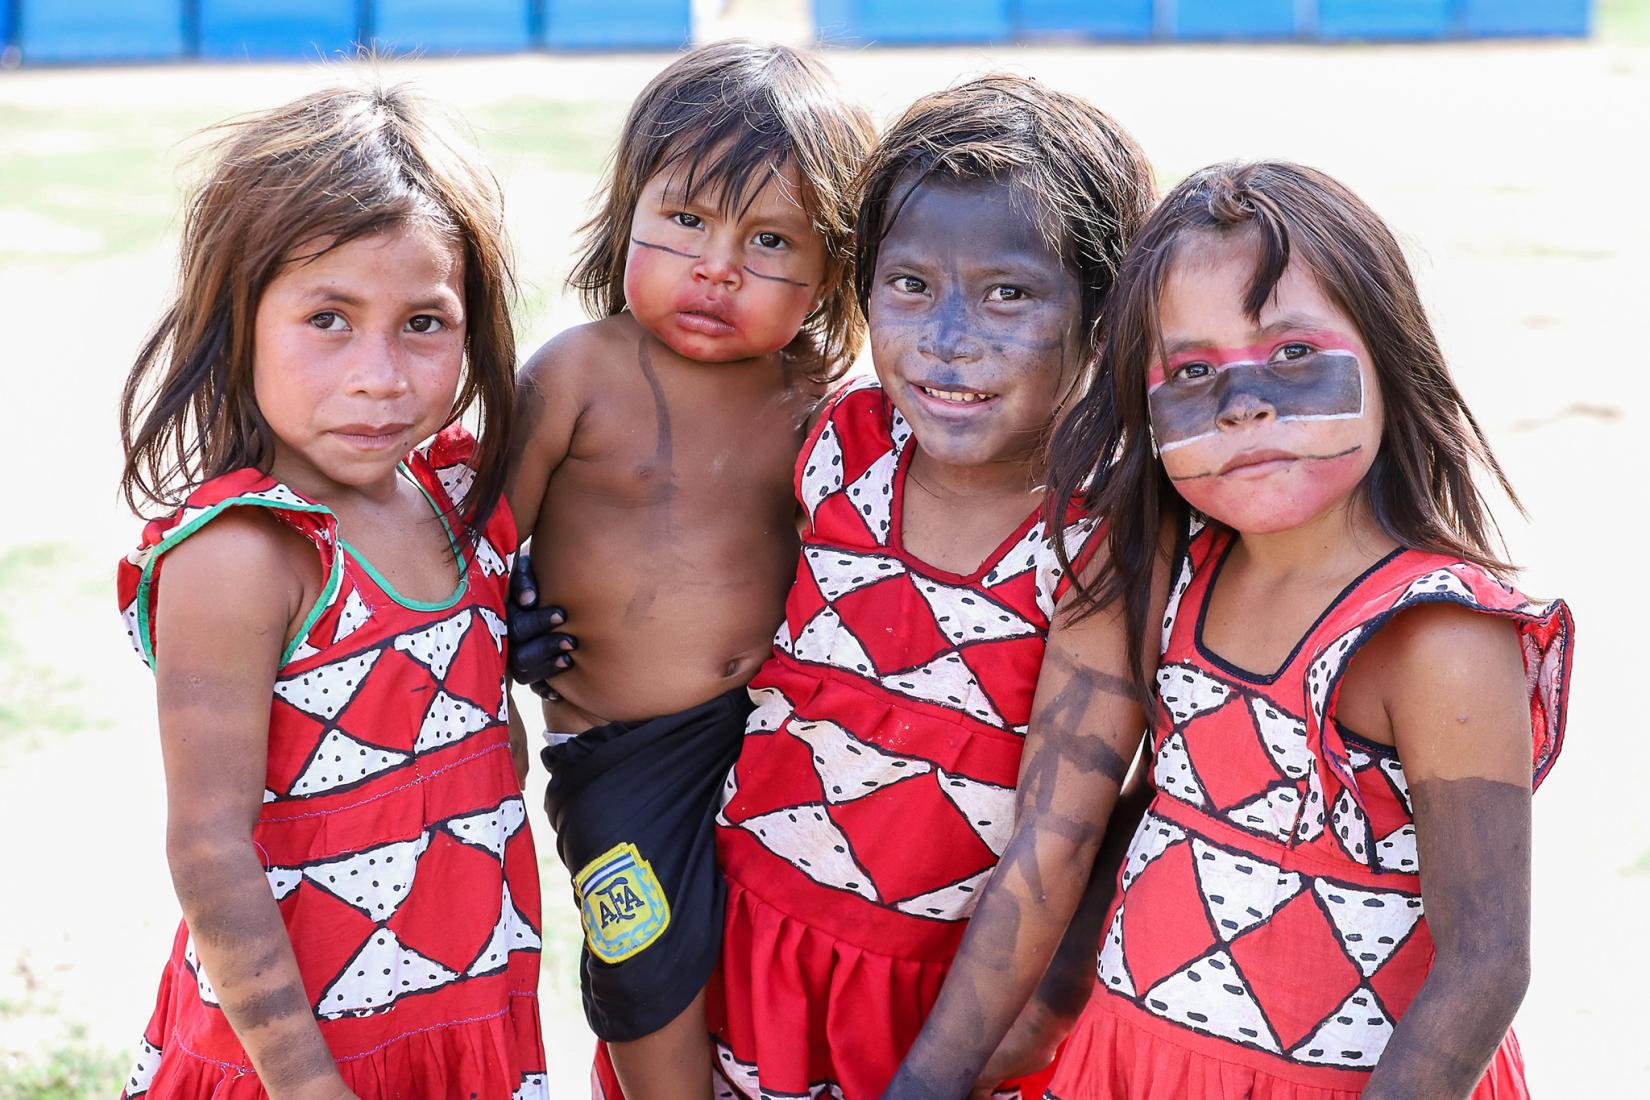 quatro crianças indígenas da Aldeia Escola Floresta, em Minas Gerais